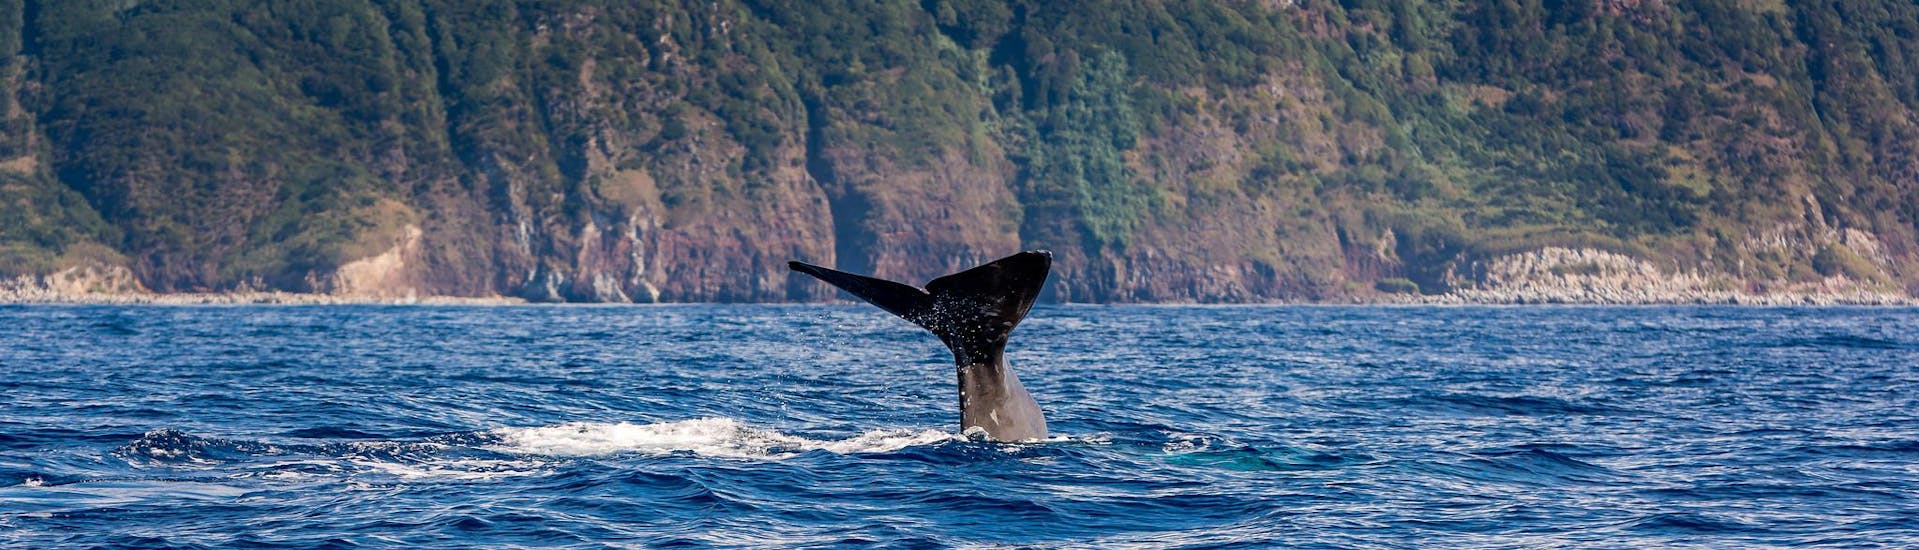 Una cola de ballena avistada por personas que realizan una excursión en barco con avistamiento de cetáceos.